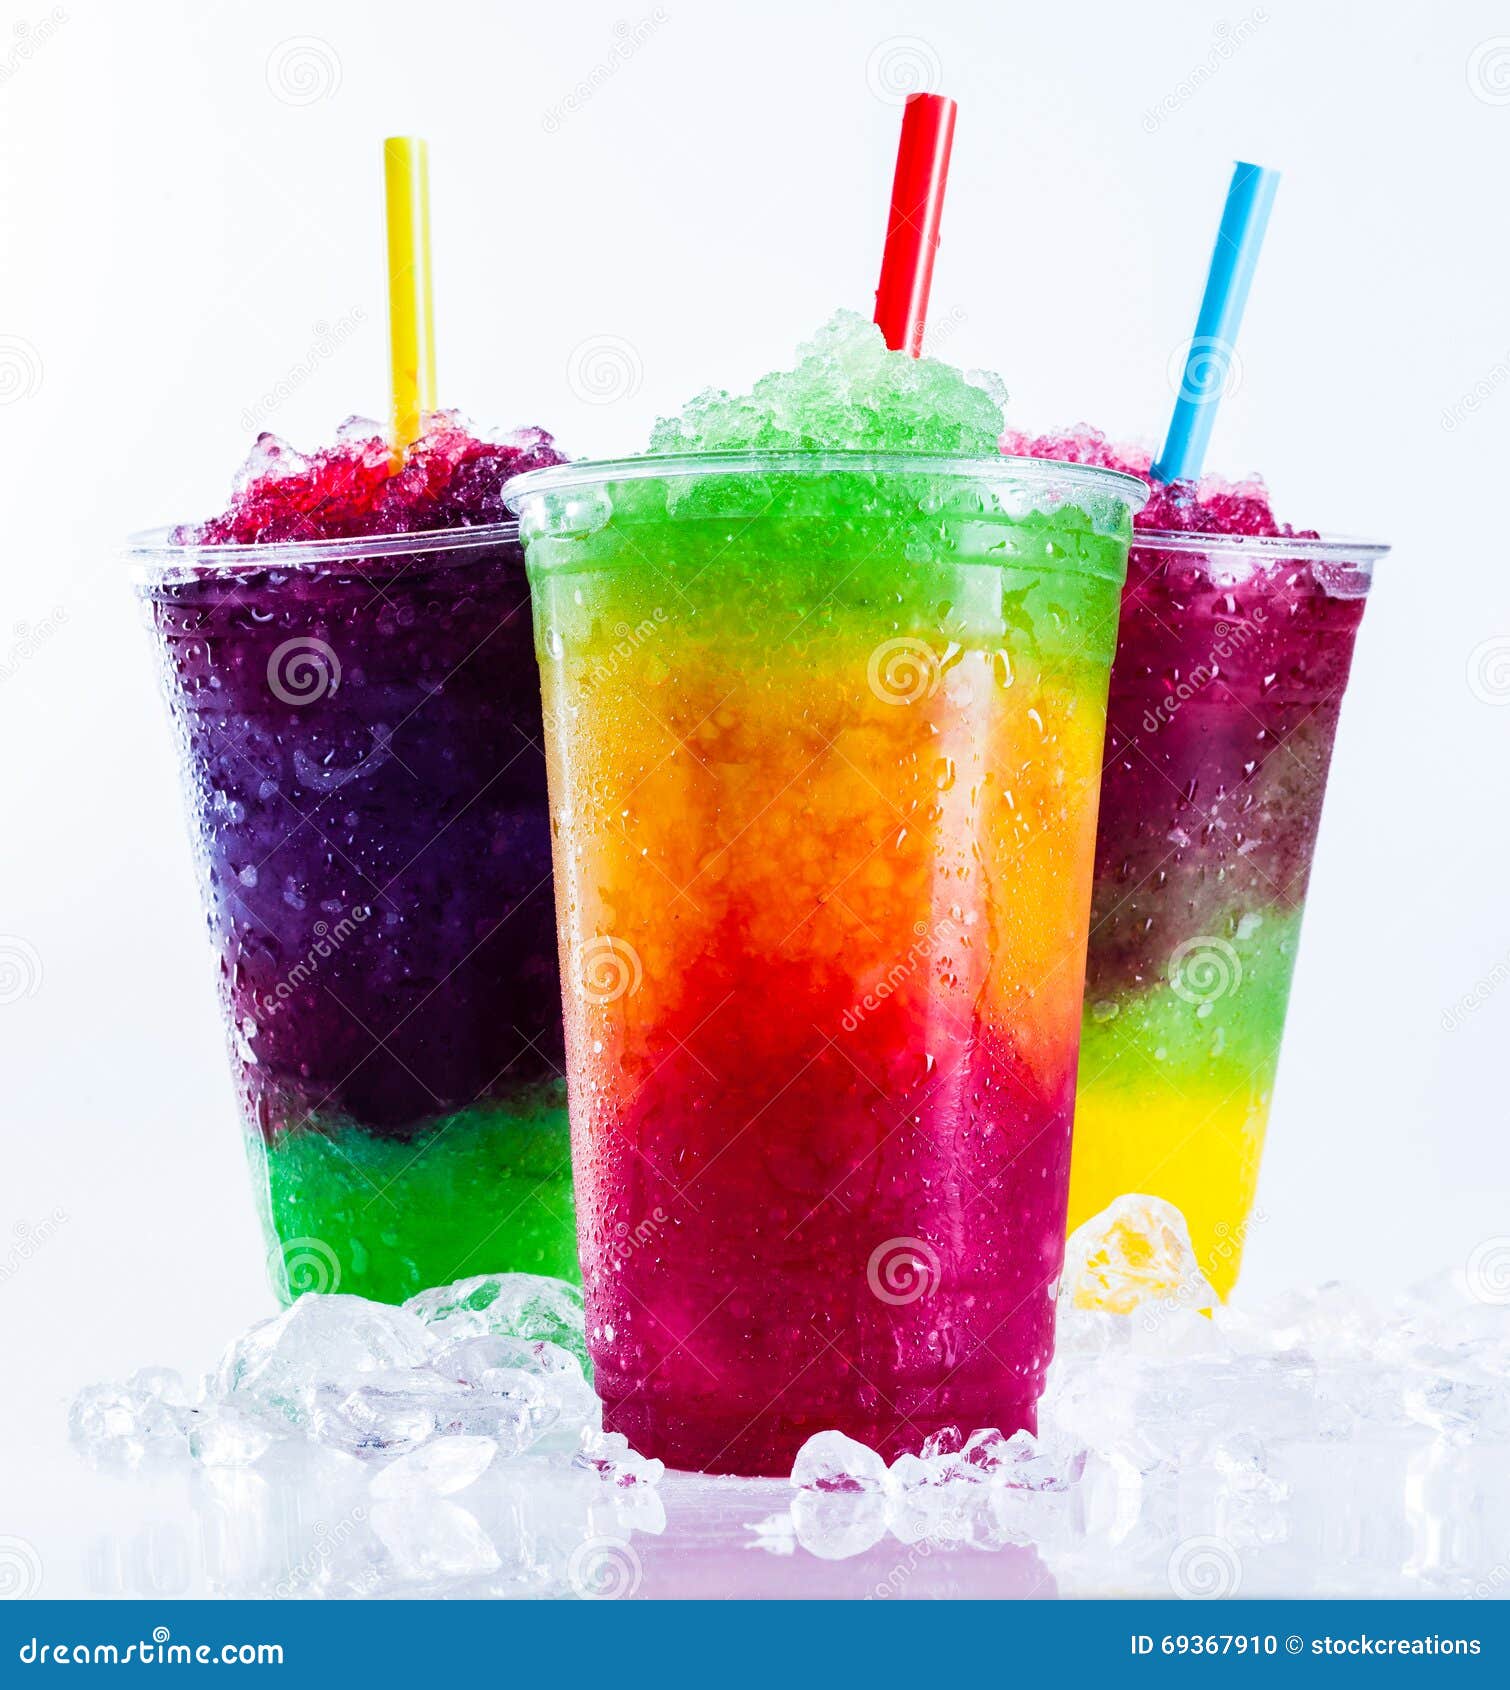 frozen rainbow slush drinks chilling on ice